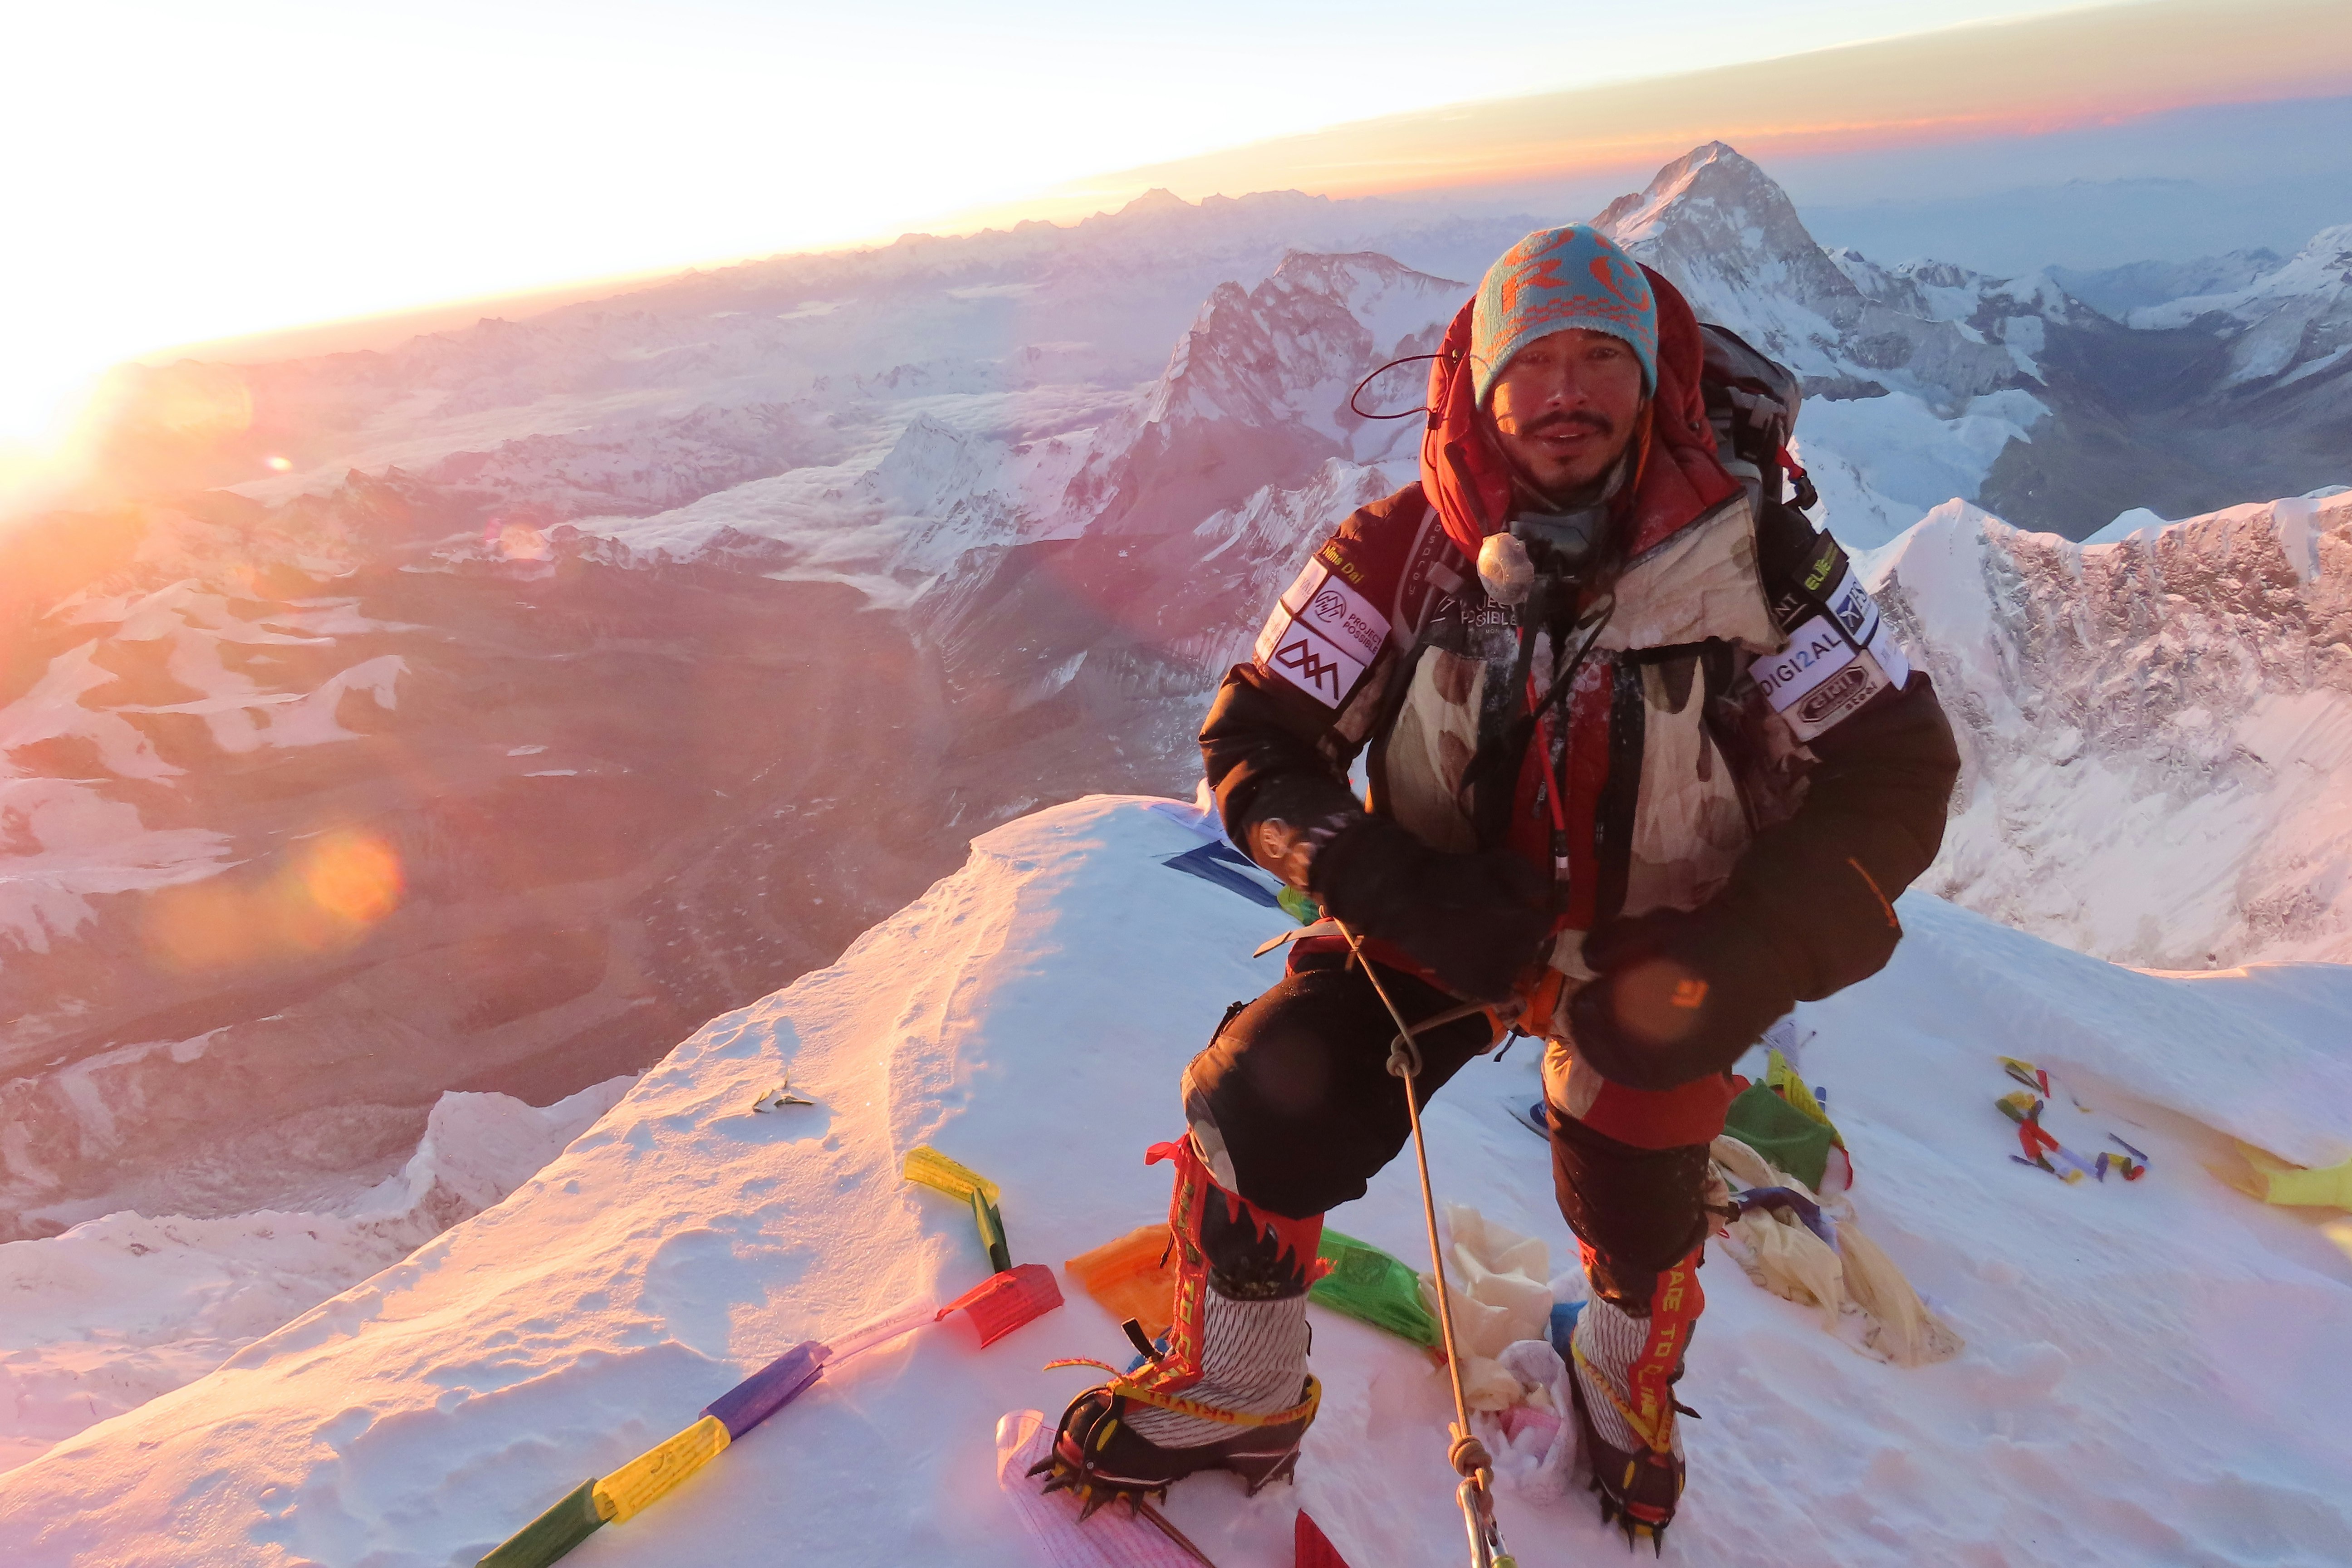 Summit Everest-Nimsdai-.JPG